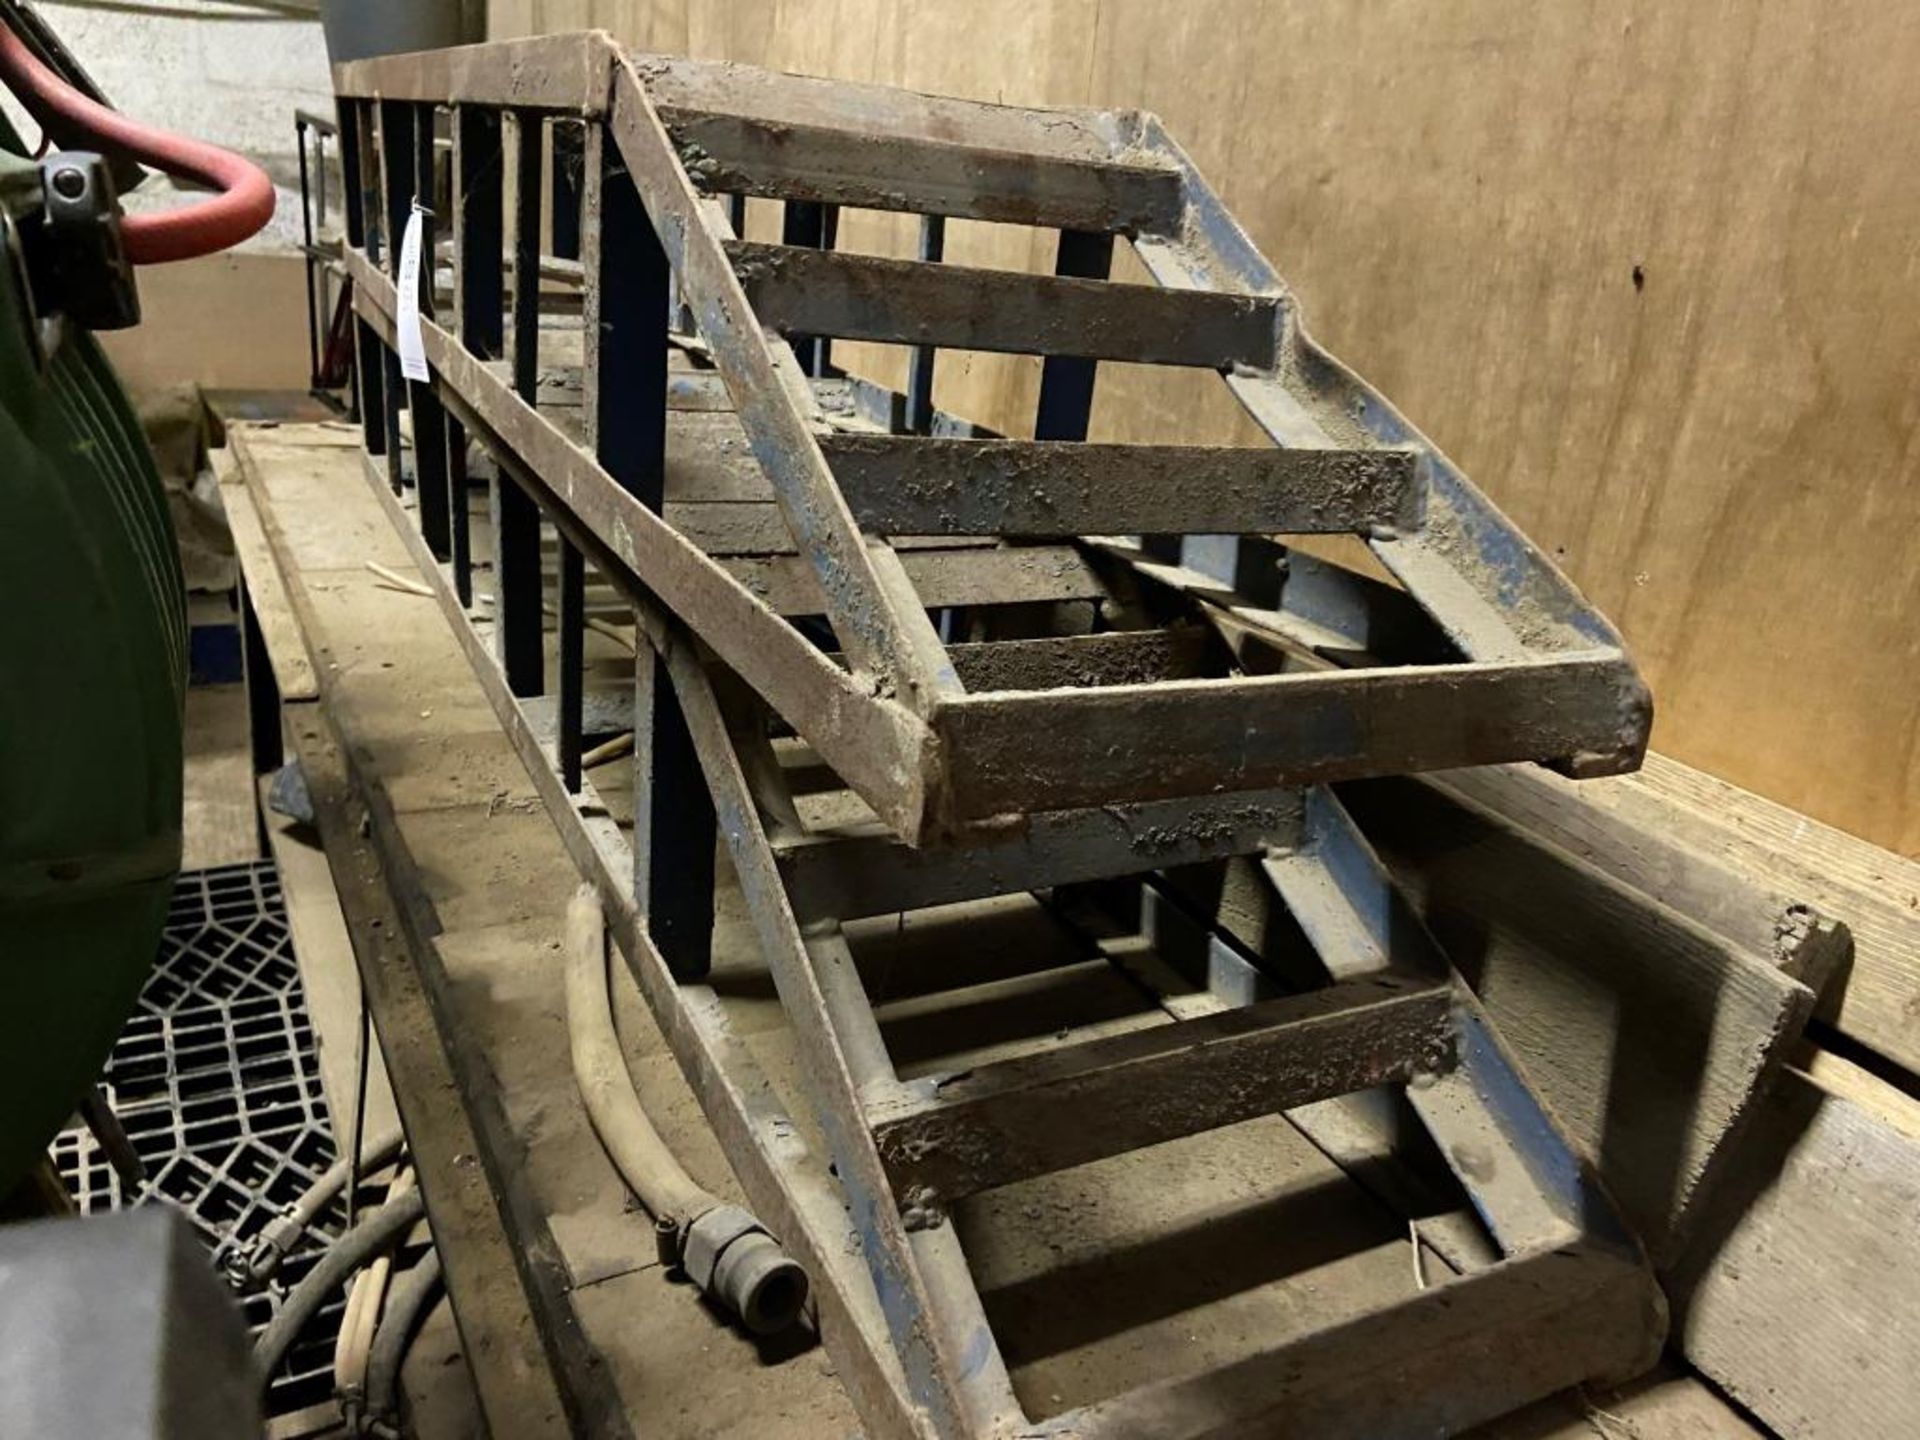 One pair of steel ramps